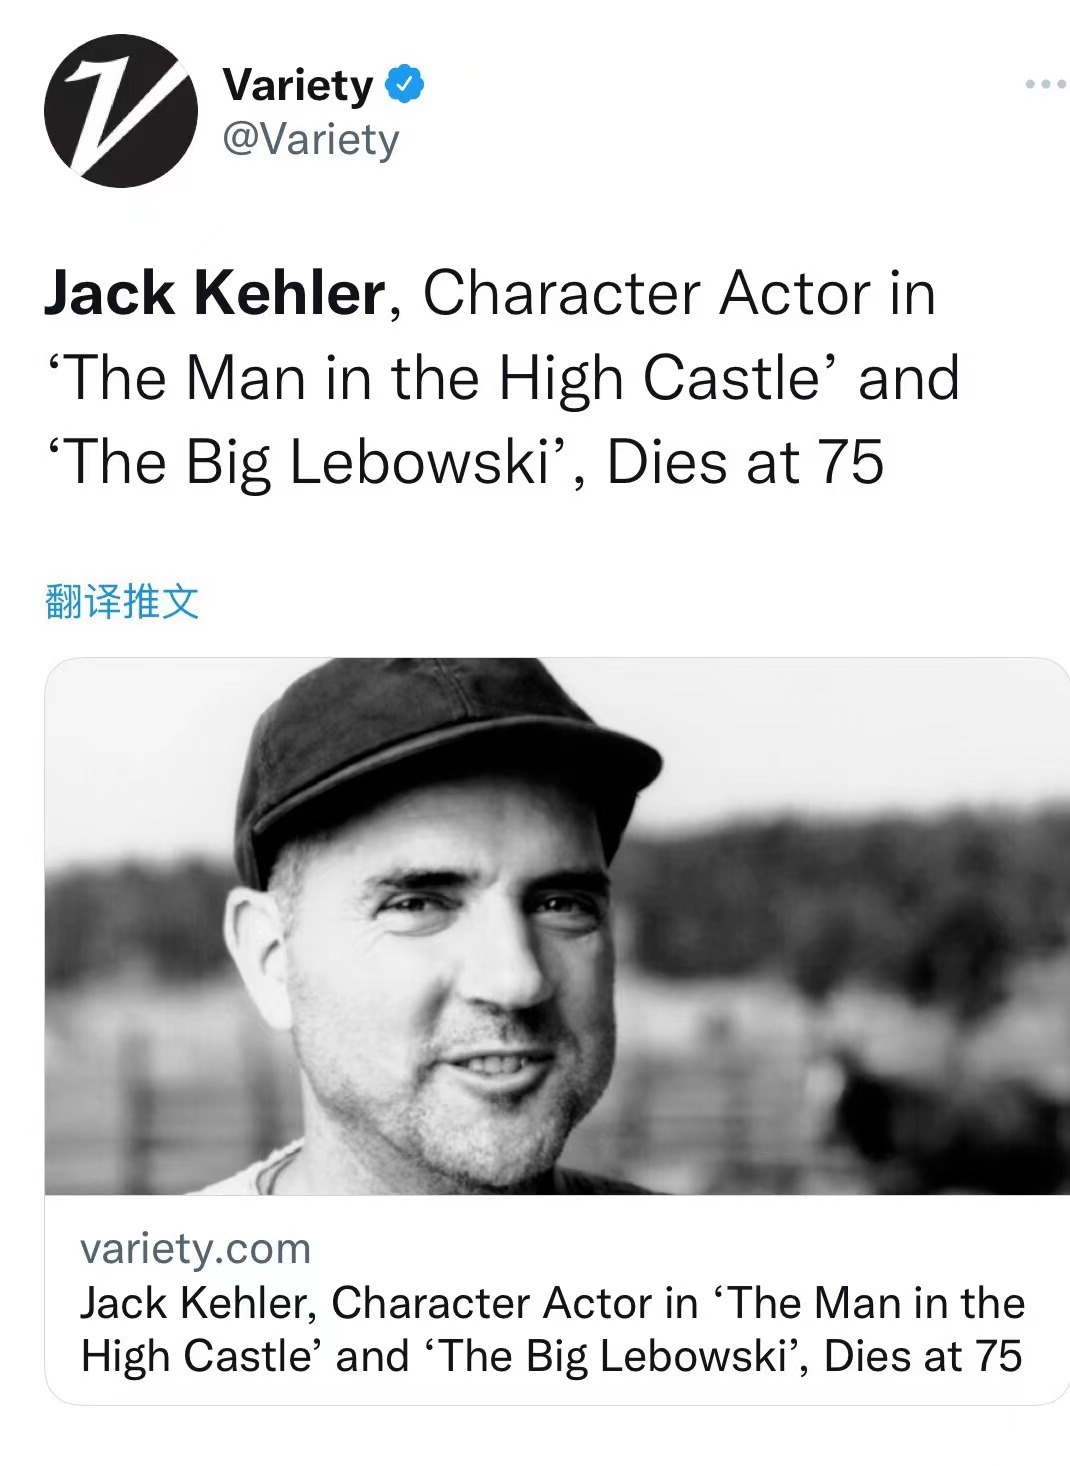 美国演员杰克科勒尔去世 曾出演《广告狂人》《黑衣人2》等作品